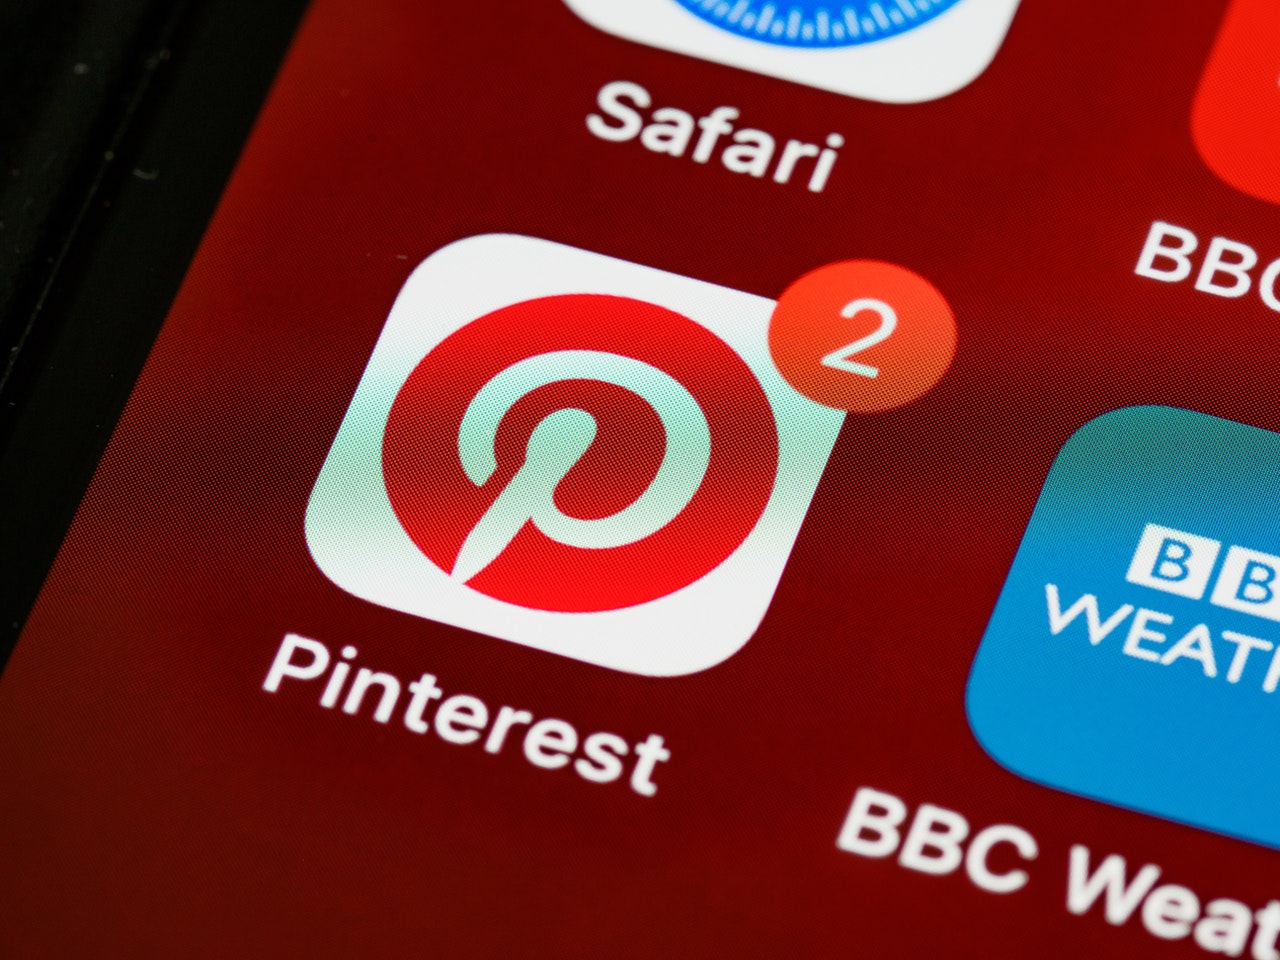 PinView: jouw Facebook nieuws als Pinterest board